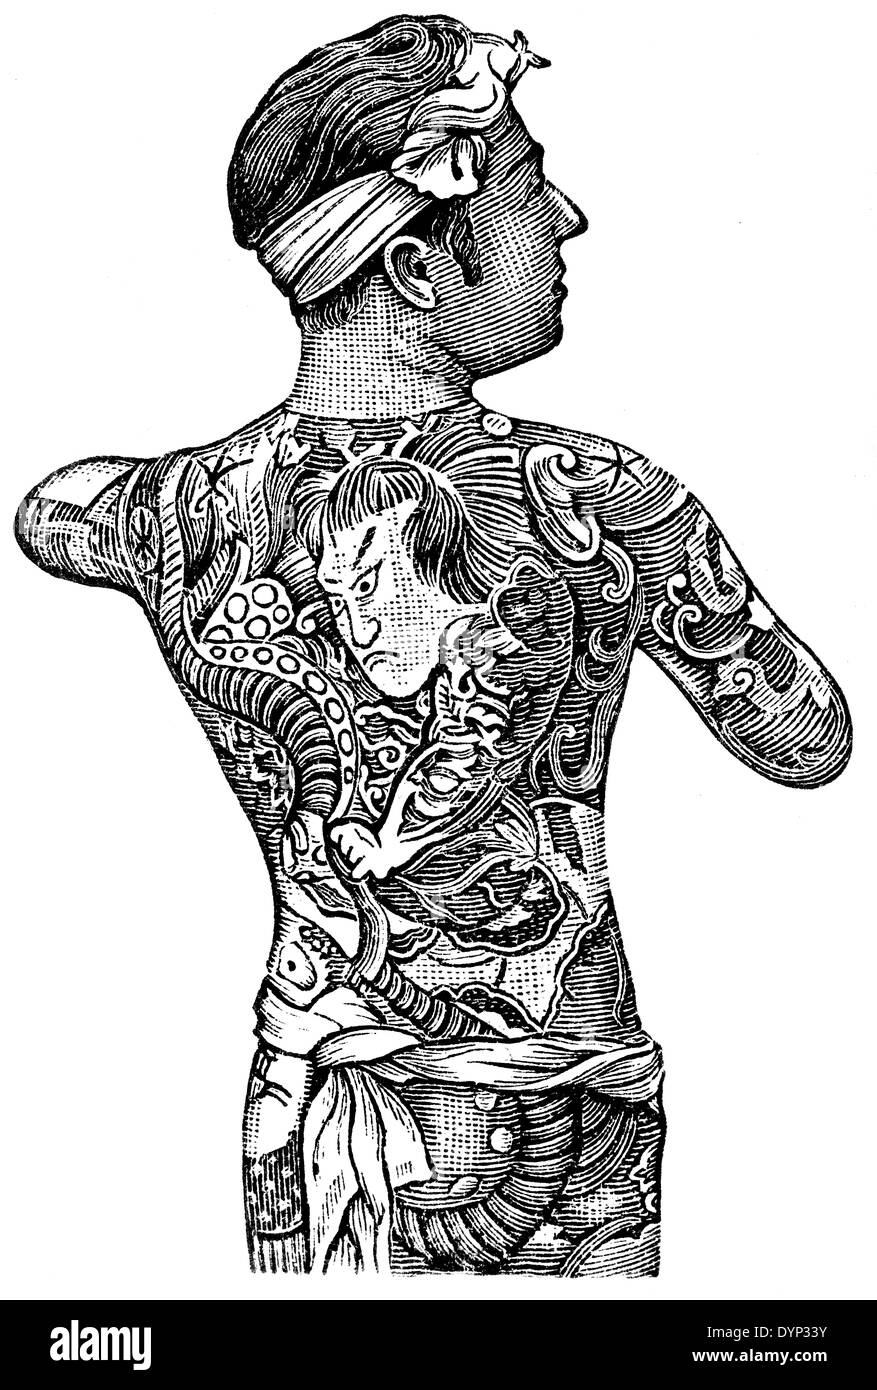 L'homme japonais avec tattoo, illustration de l'Encyclopédie Soviétique, 1926 Banque D'Images